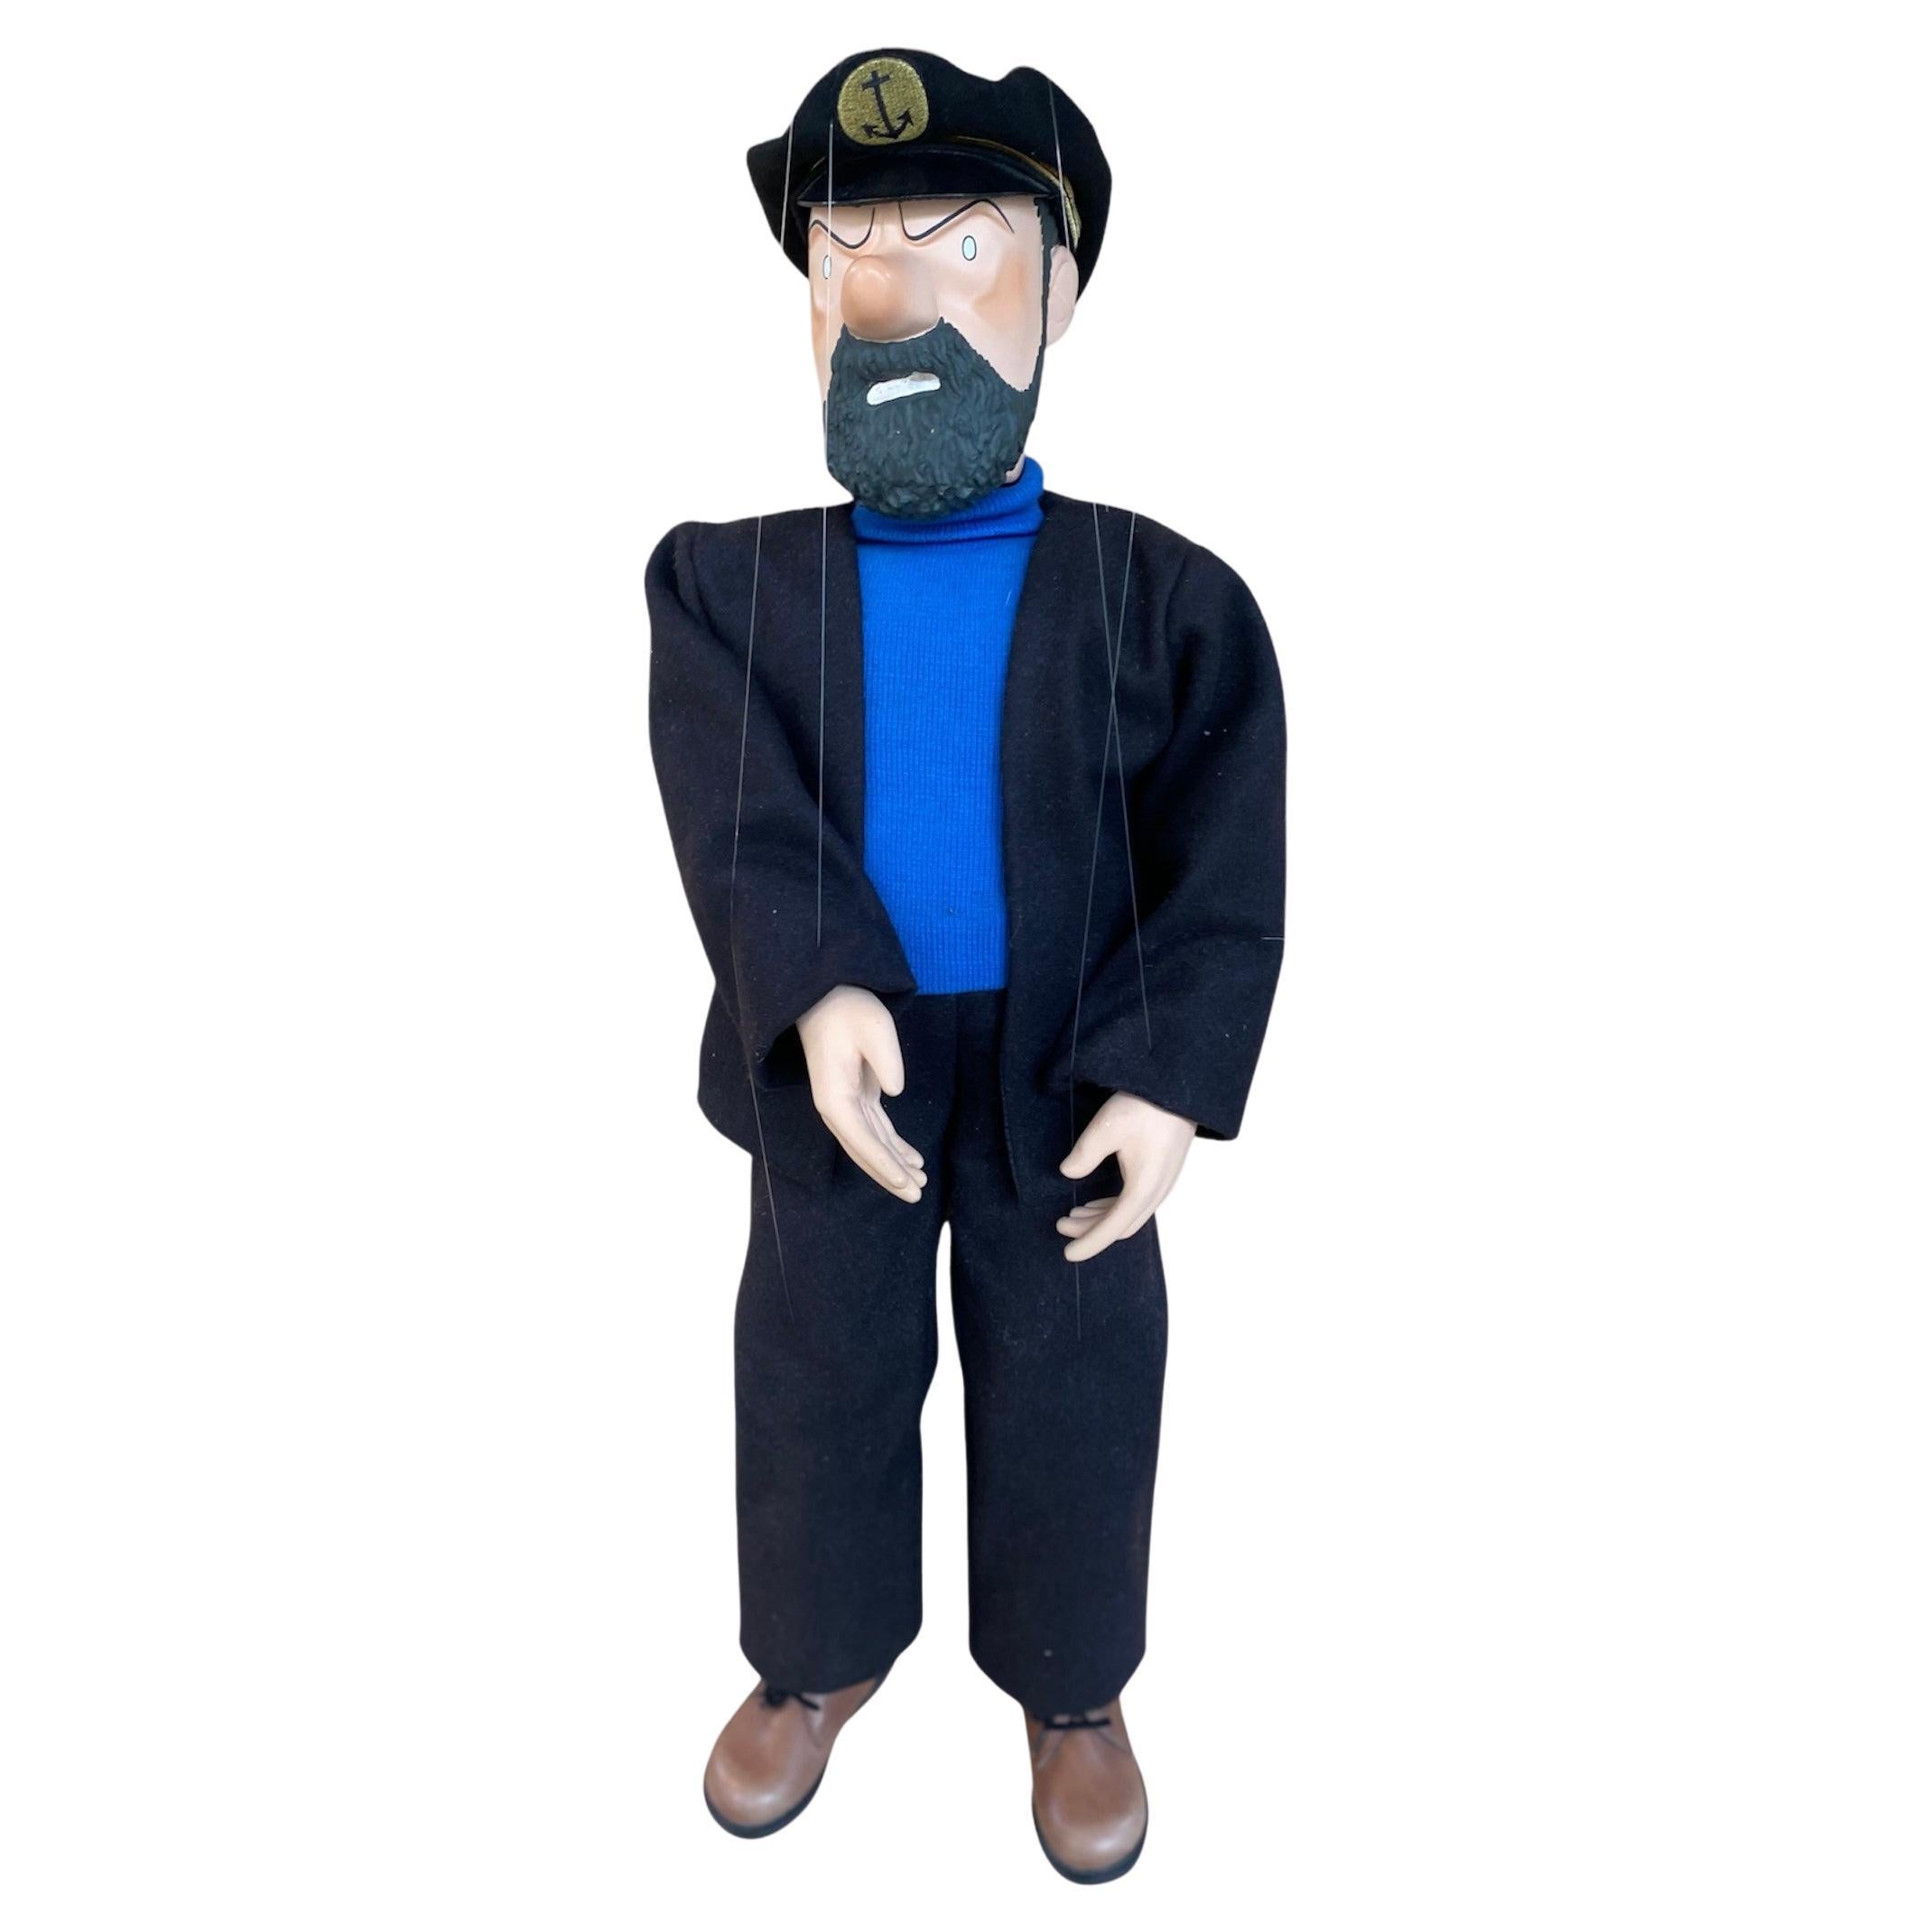 Sehr seltene Kapitän Haddock Puppe Hergé, Georges Remi